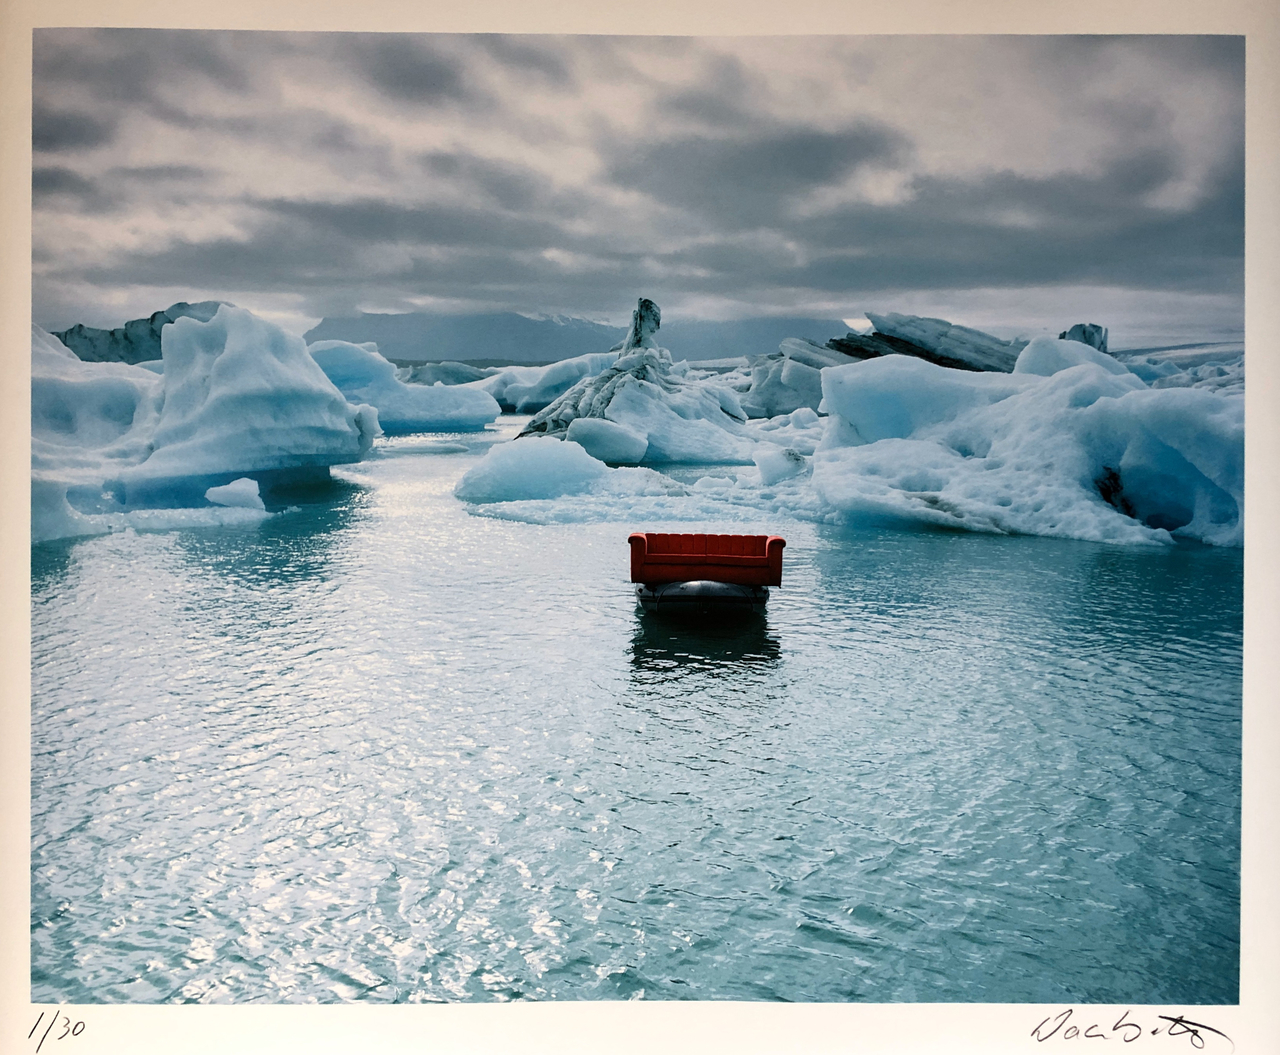 The Red Couch - Gletscherlagune Island, 2003